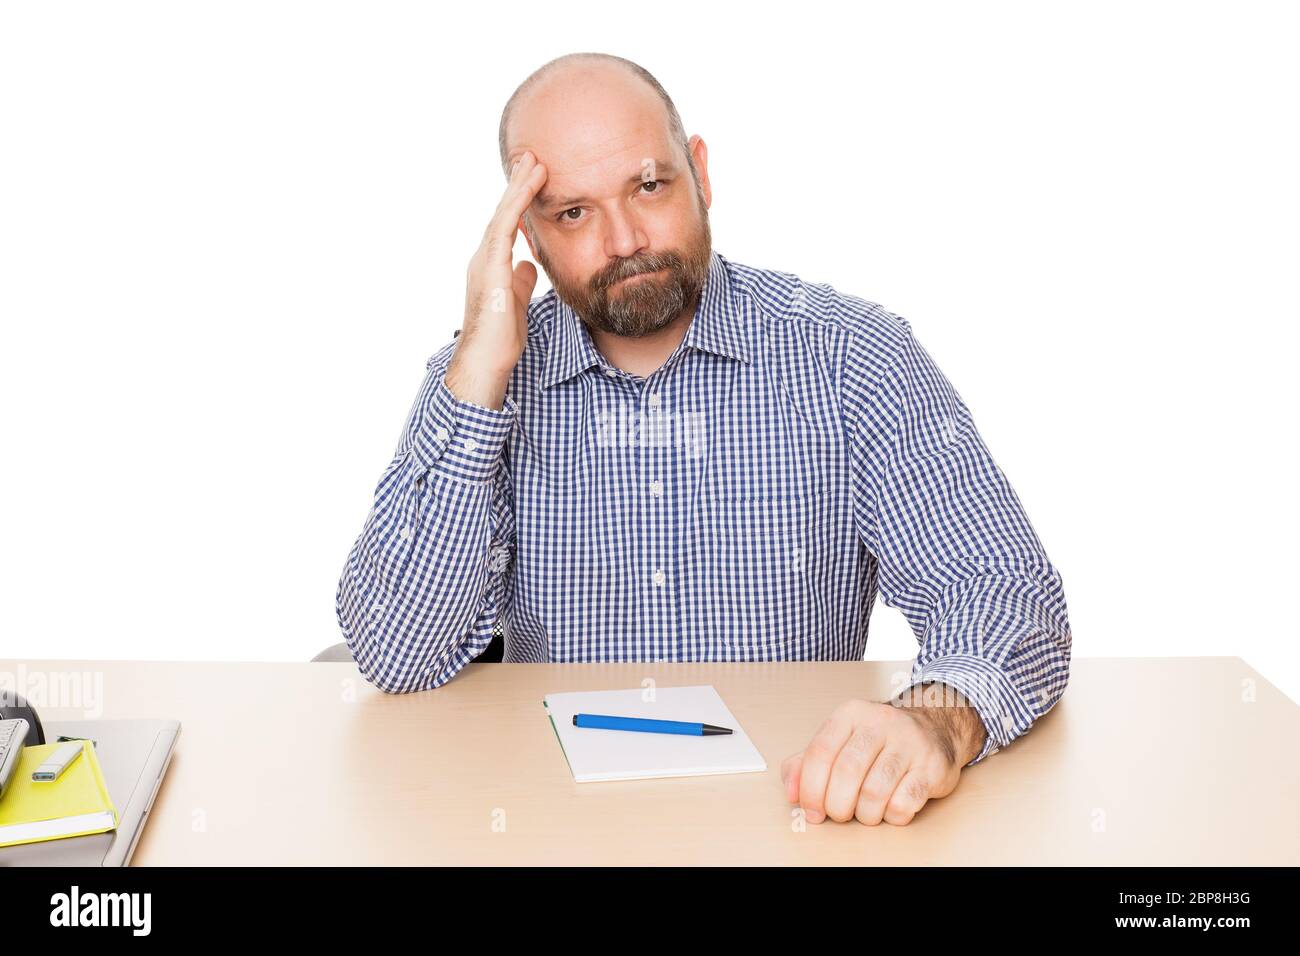 Ein ratloser Mann mit Bart un seinem Schreibtisch vor weissem Hintergrund Foto Stock